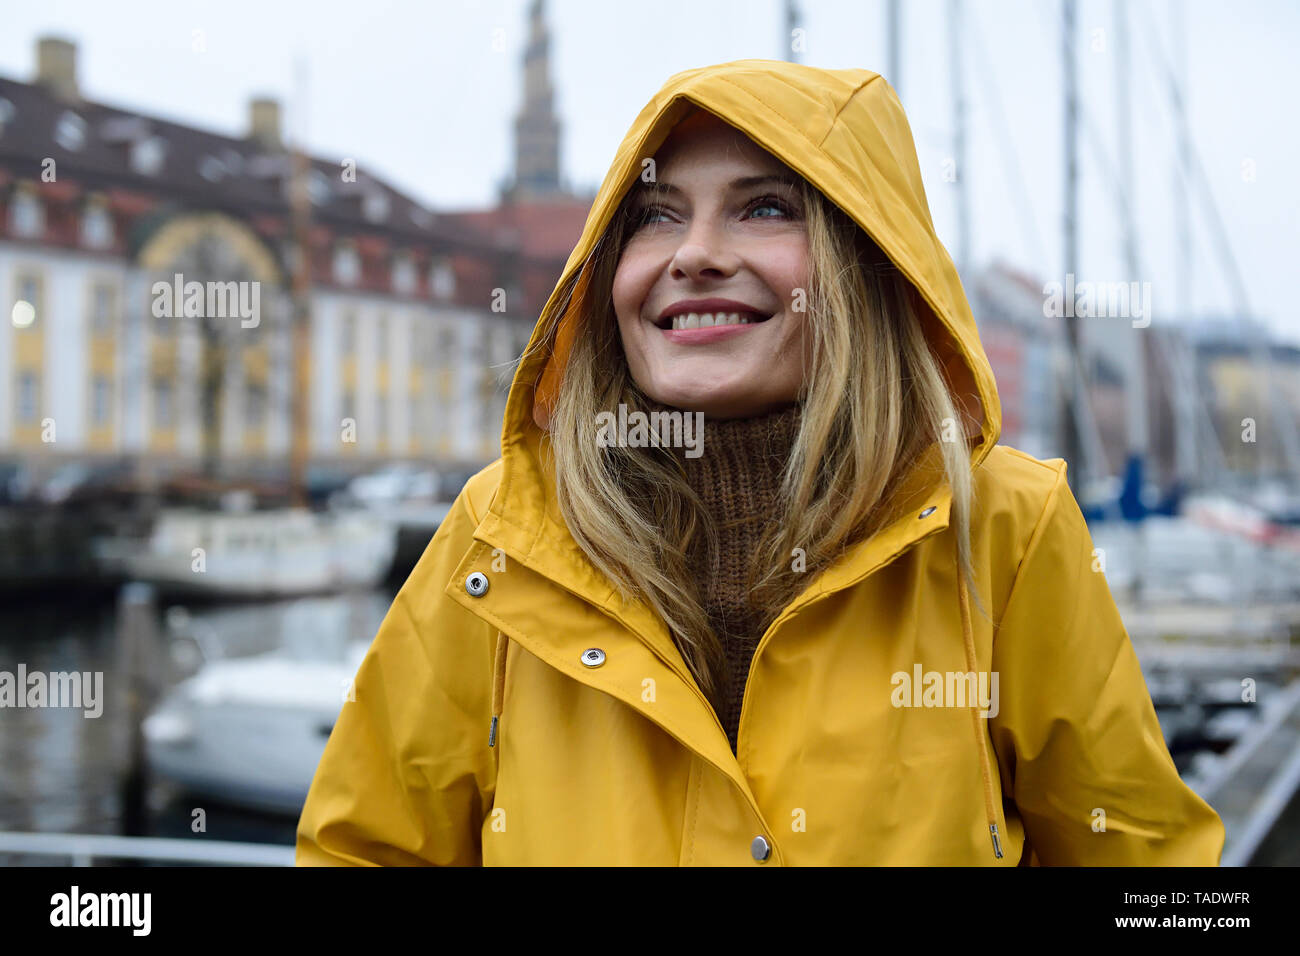 Danemark, copenhague, portrait de femme heureuse au port de la ville par temps de pluie Banque D'Images